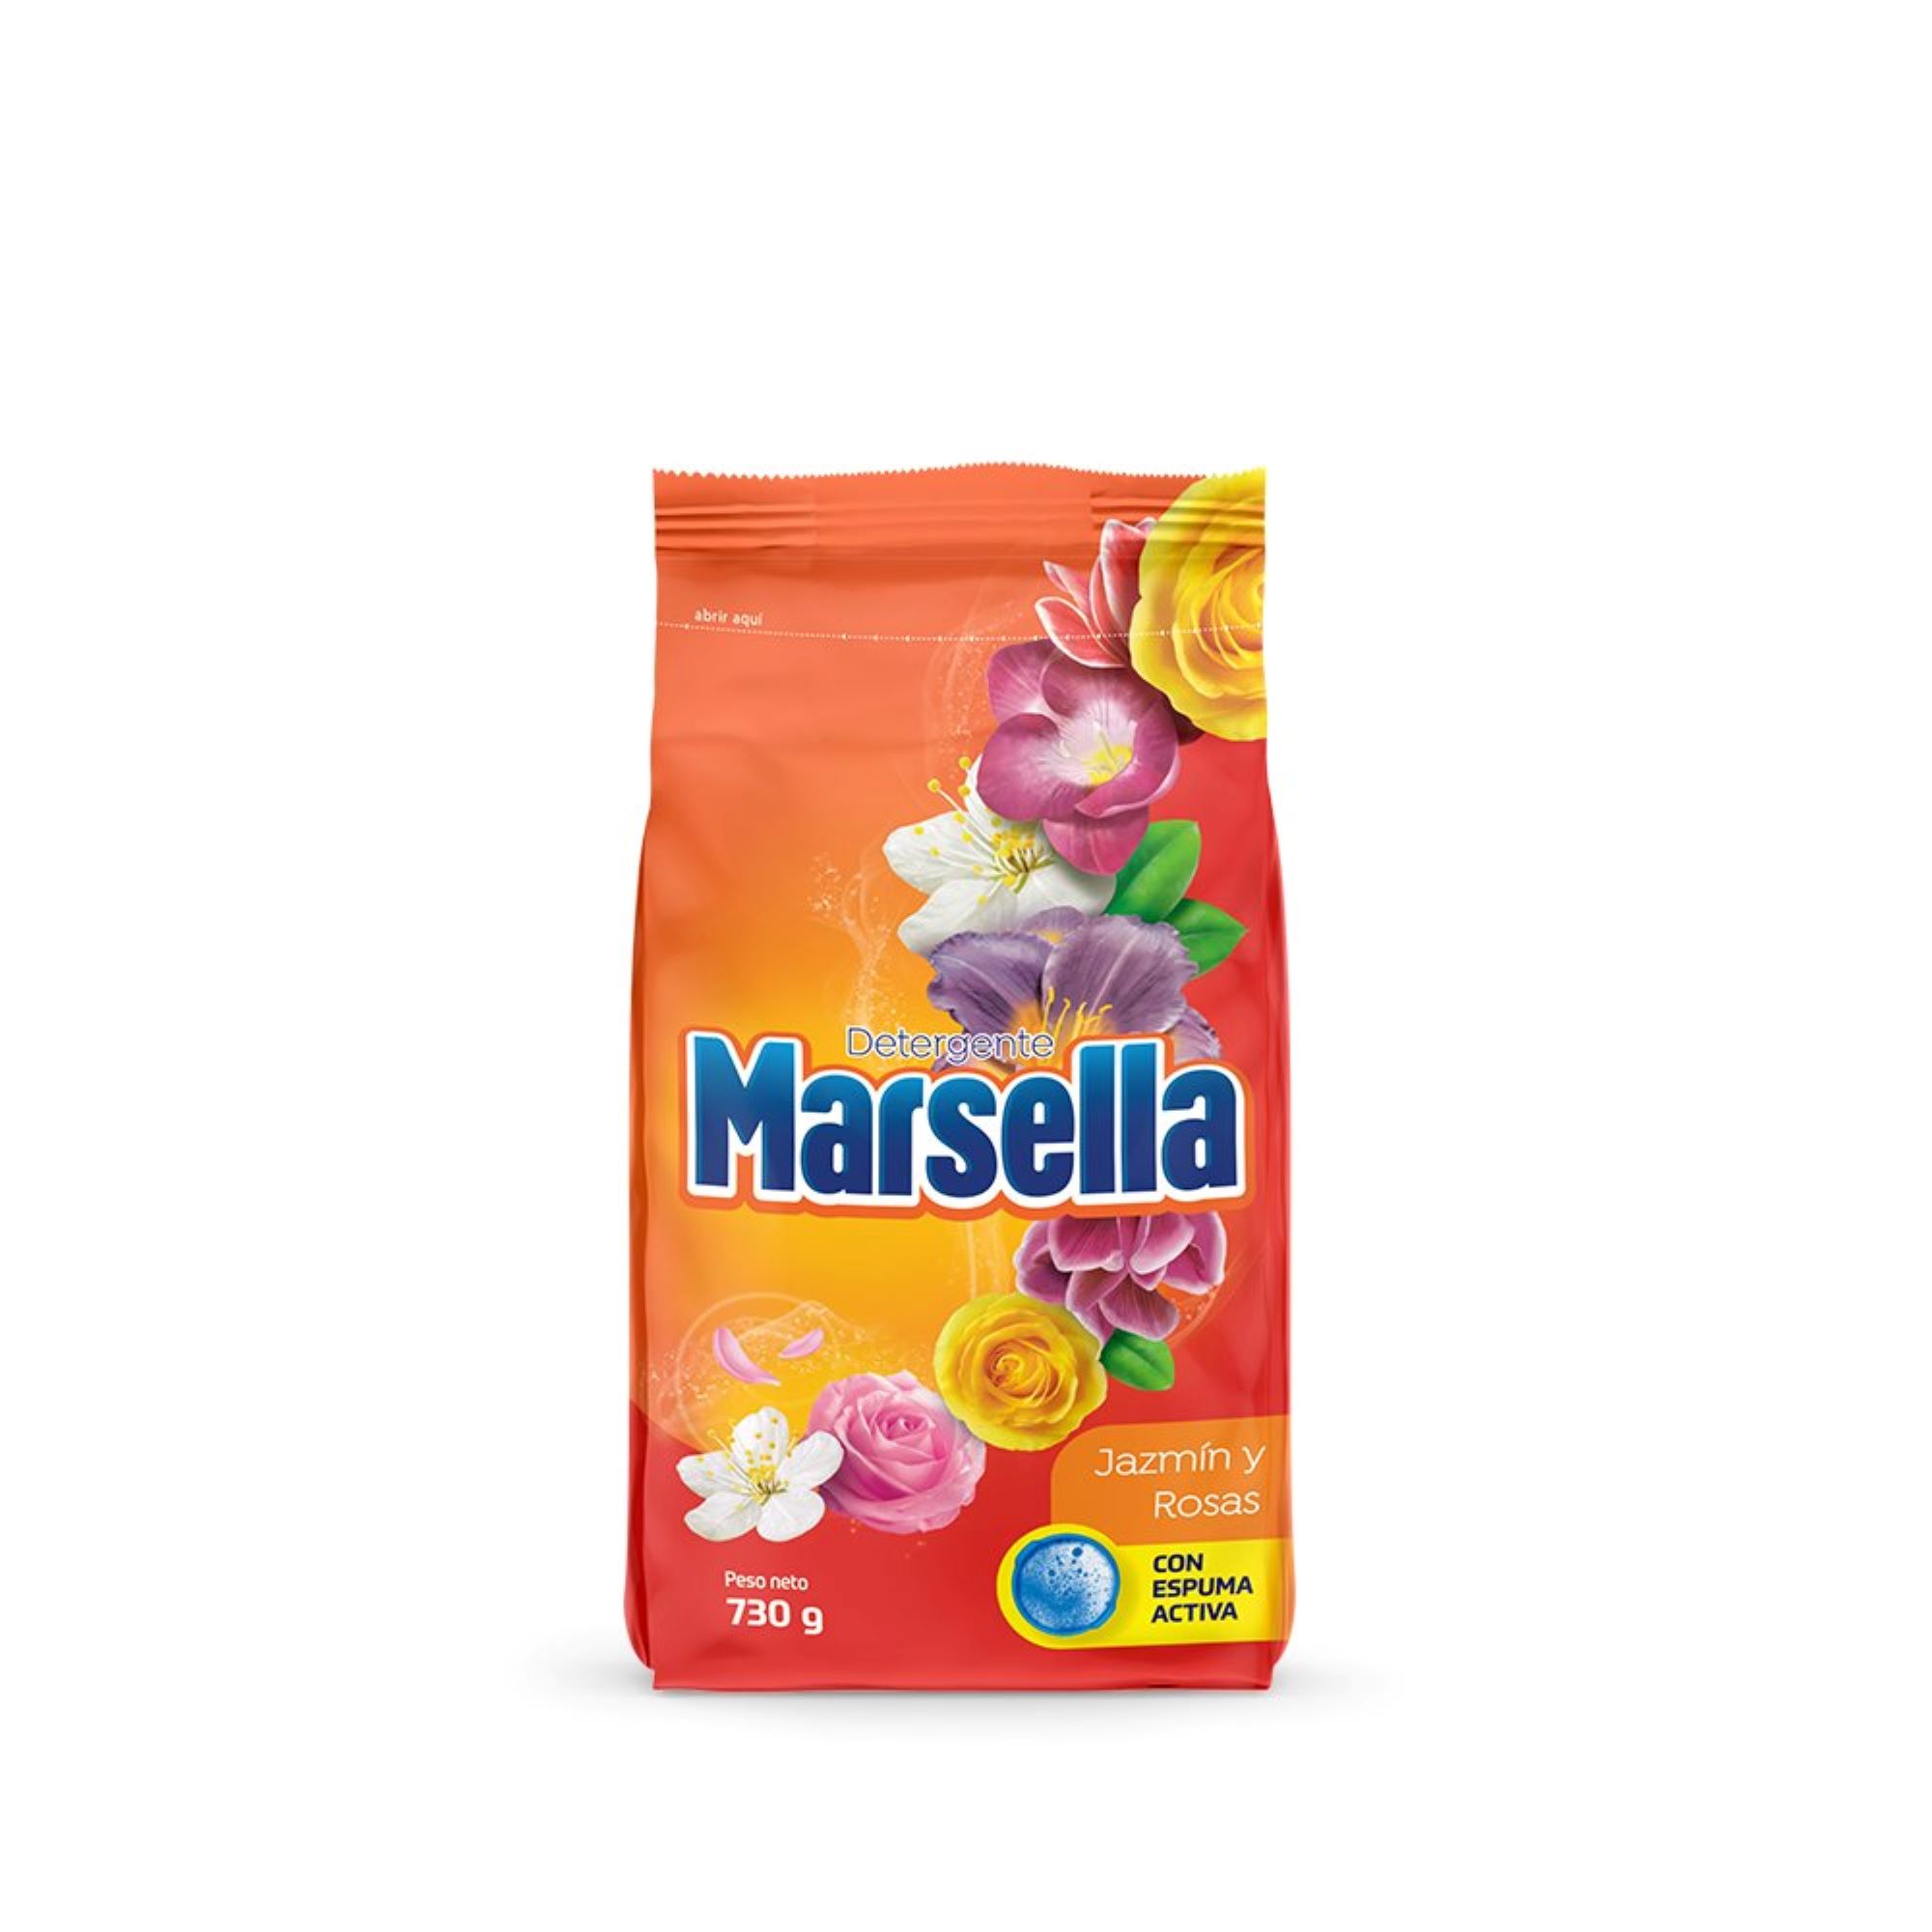 Detergente en Polvo MARSELLA Jazmín y Rosas Bolsa 730g PV